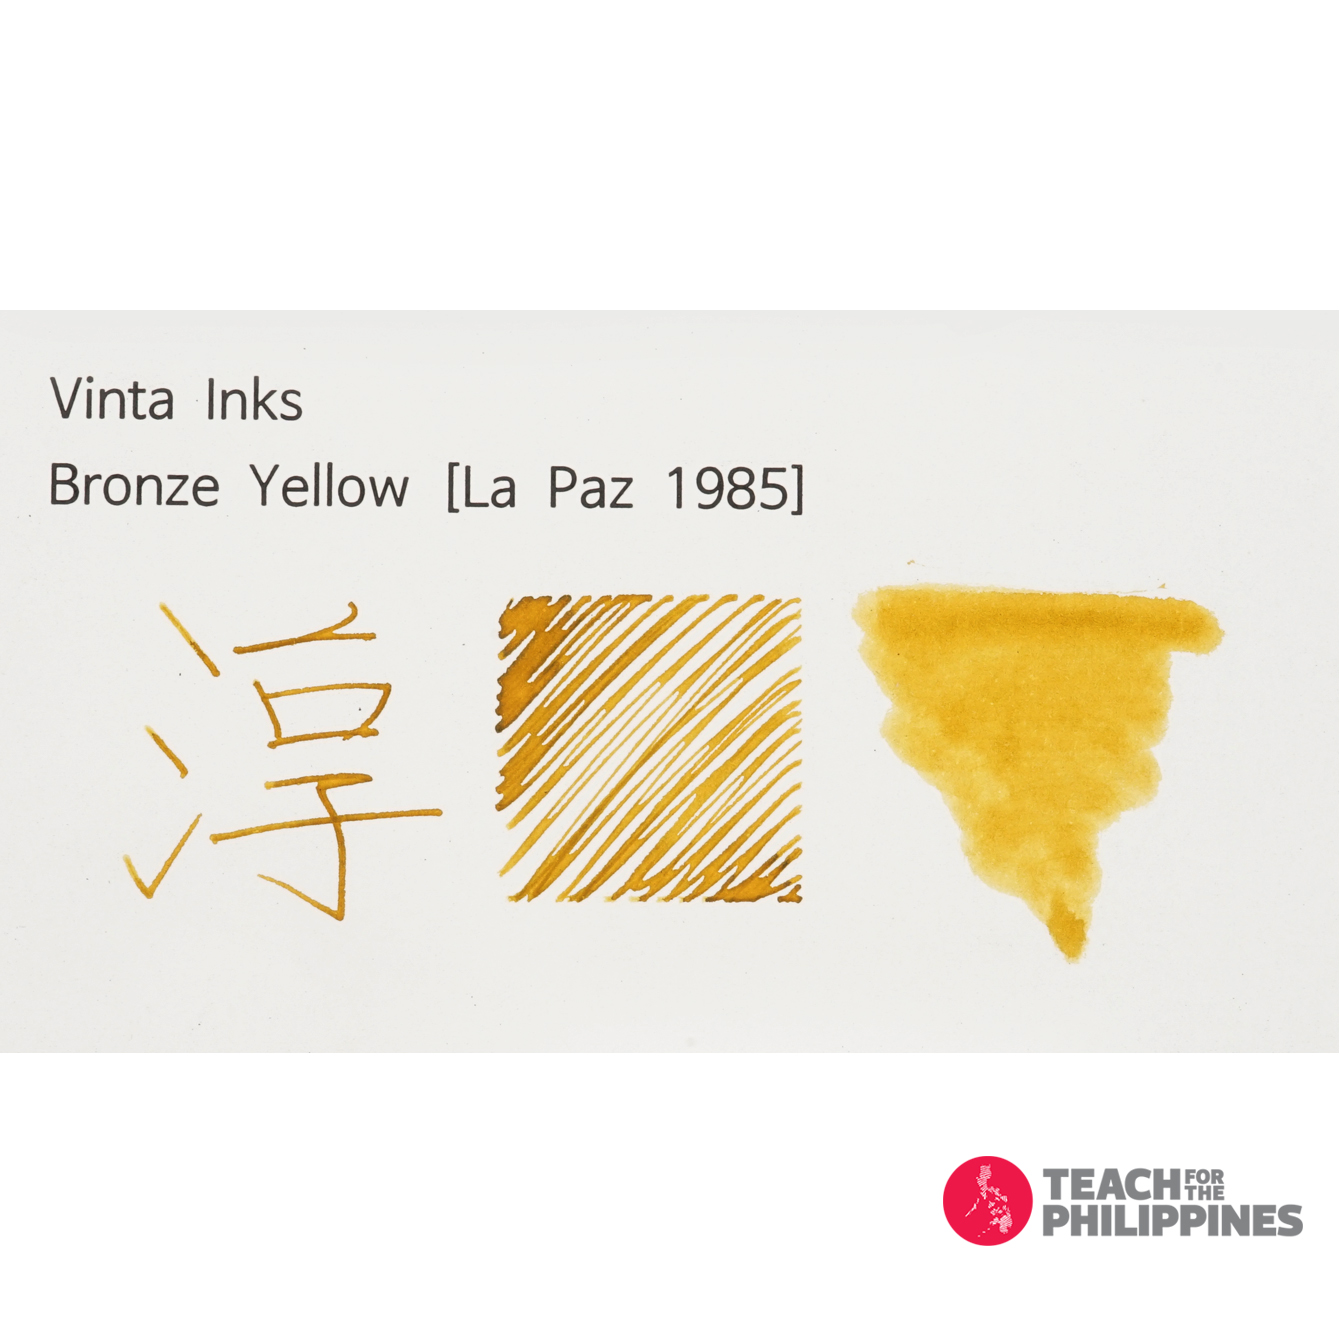 빈타 병 잉크 브론즈 옐로우 라 파즈 Bronze Yellow La Paz